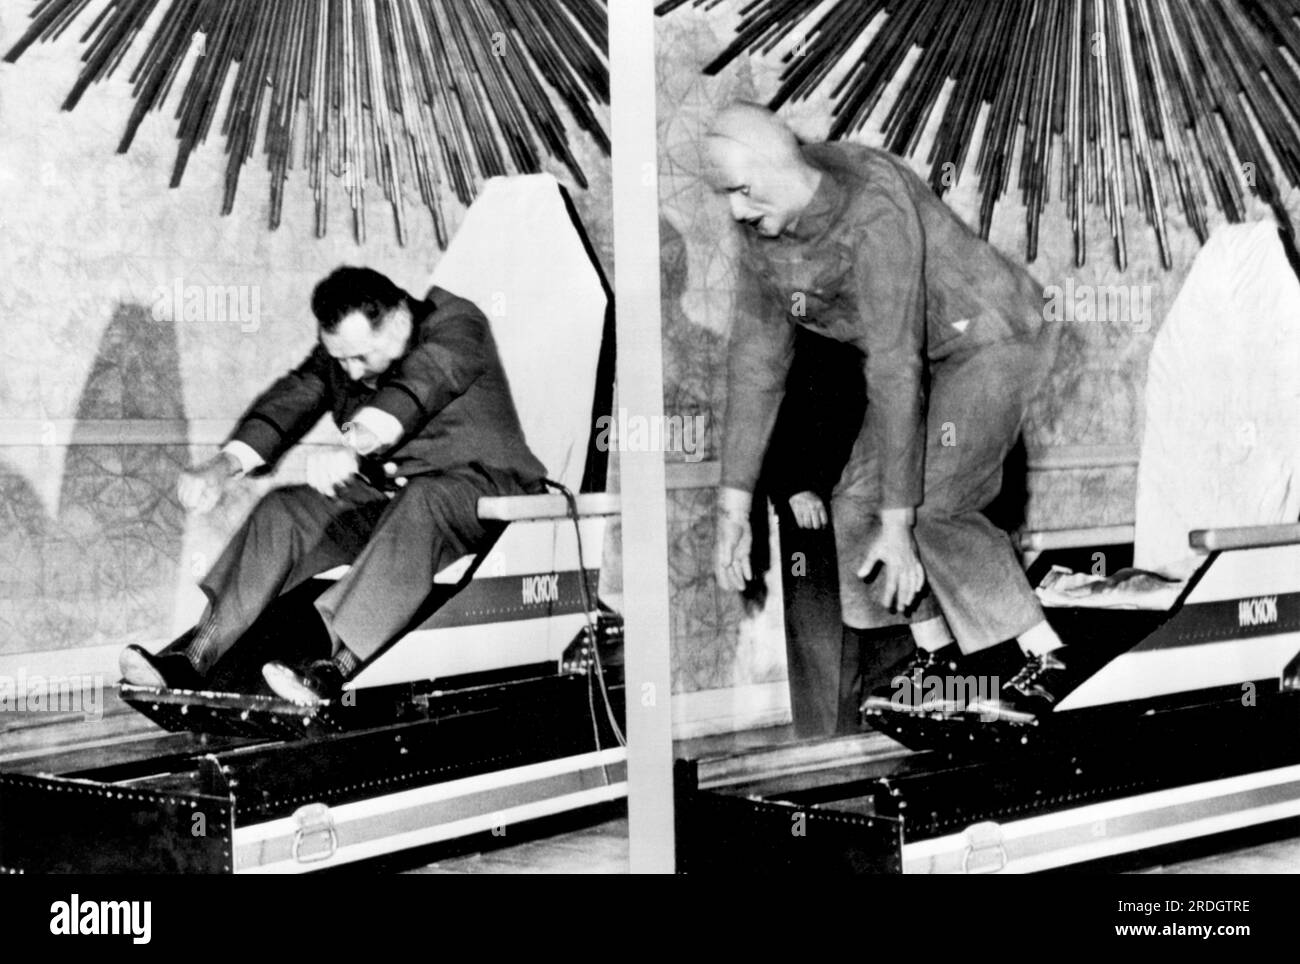 Washington, D.C.: 25. Juni 1962 Aero-Space Pioneer Col. John Stapp demonstriert die Effektivität von Sicherheitsgurten für die General Federation of Women's Clubs, indem er einen Dynamic Research Sled mit Sicherheitsgurt fährt und dann bei 20mph anhält. Die Gummipuppe rechts flog ohne Sicherheitsgurt durch die Luft. Stapp wurde nach seinen 1955 Raketenschlittentests als der schnellste Mann der Welt bezeichnet. Stockfoto